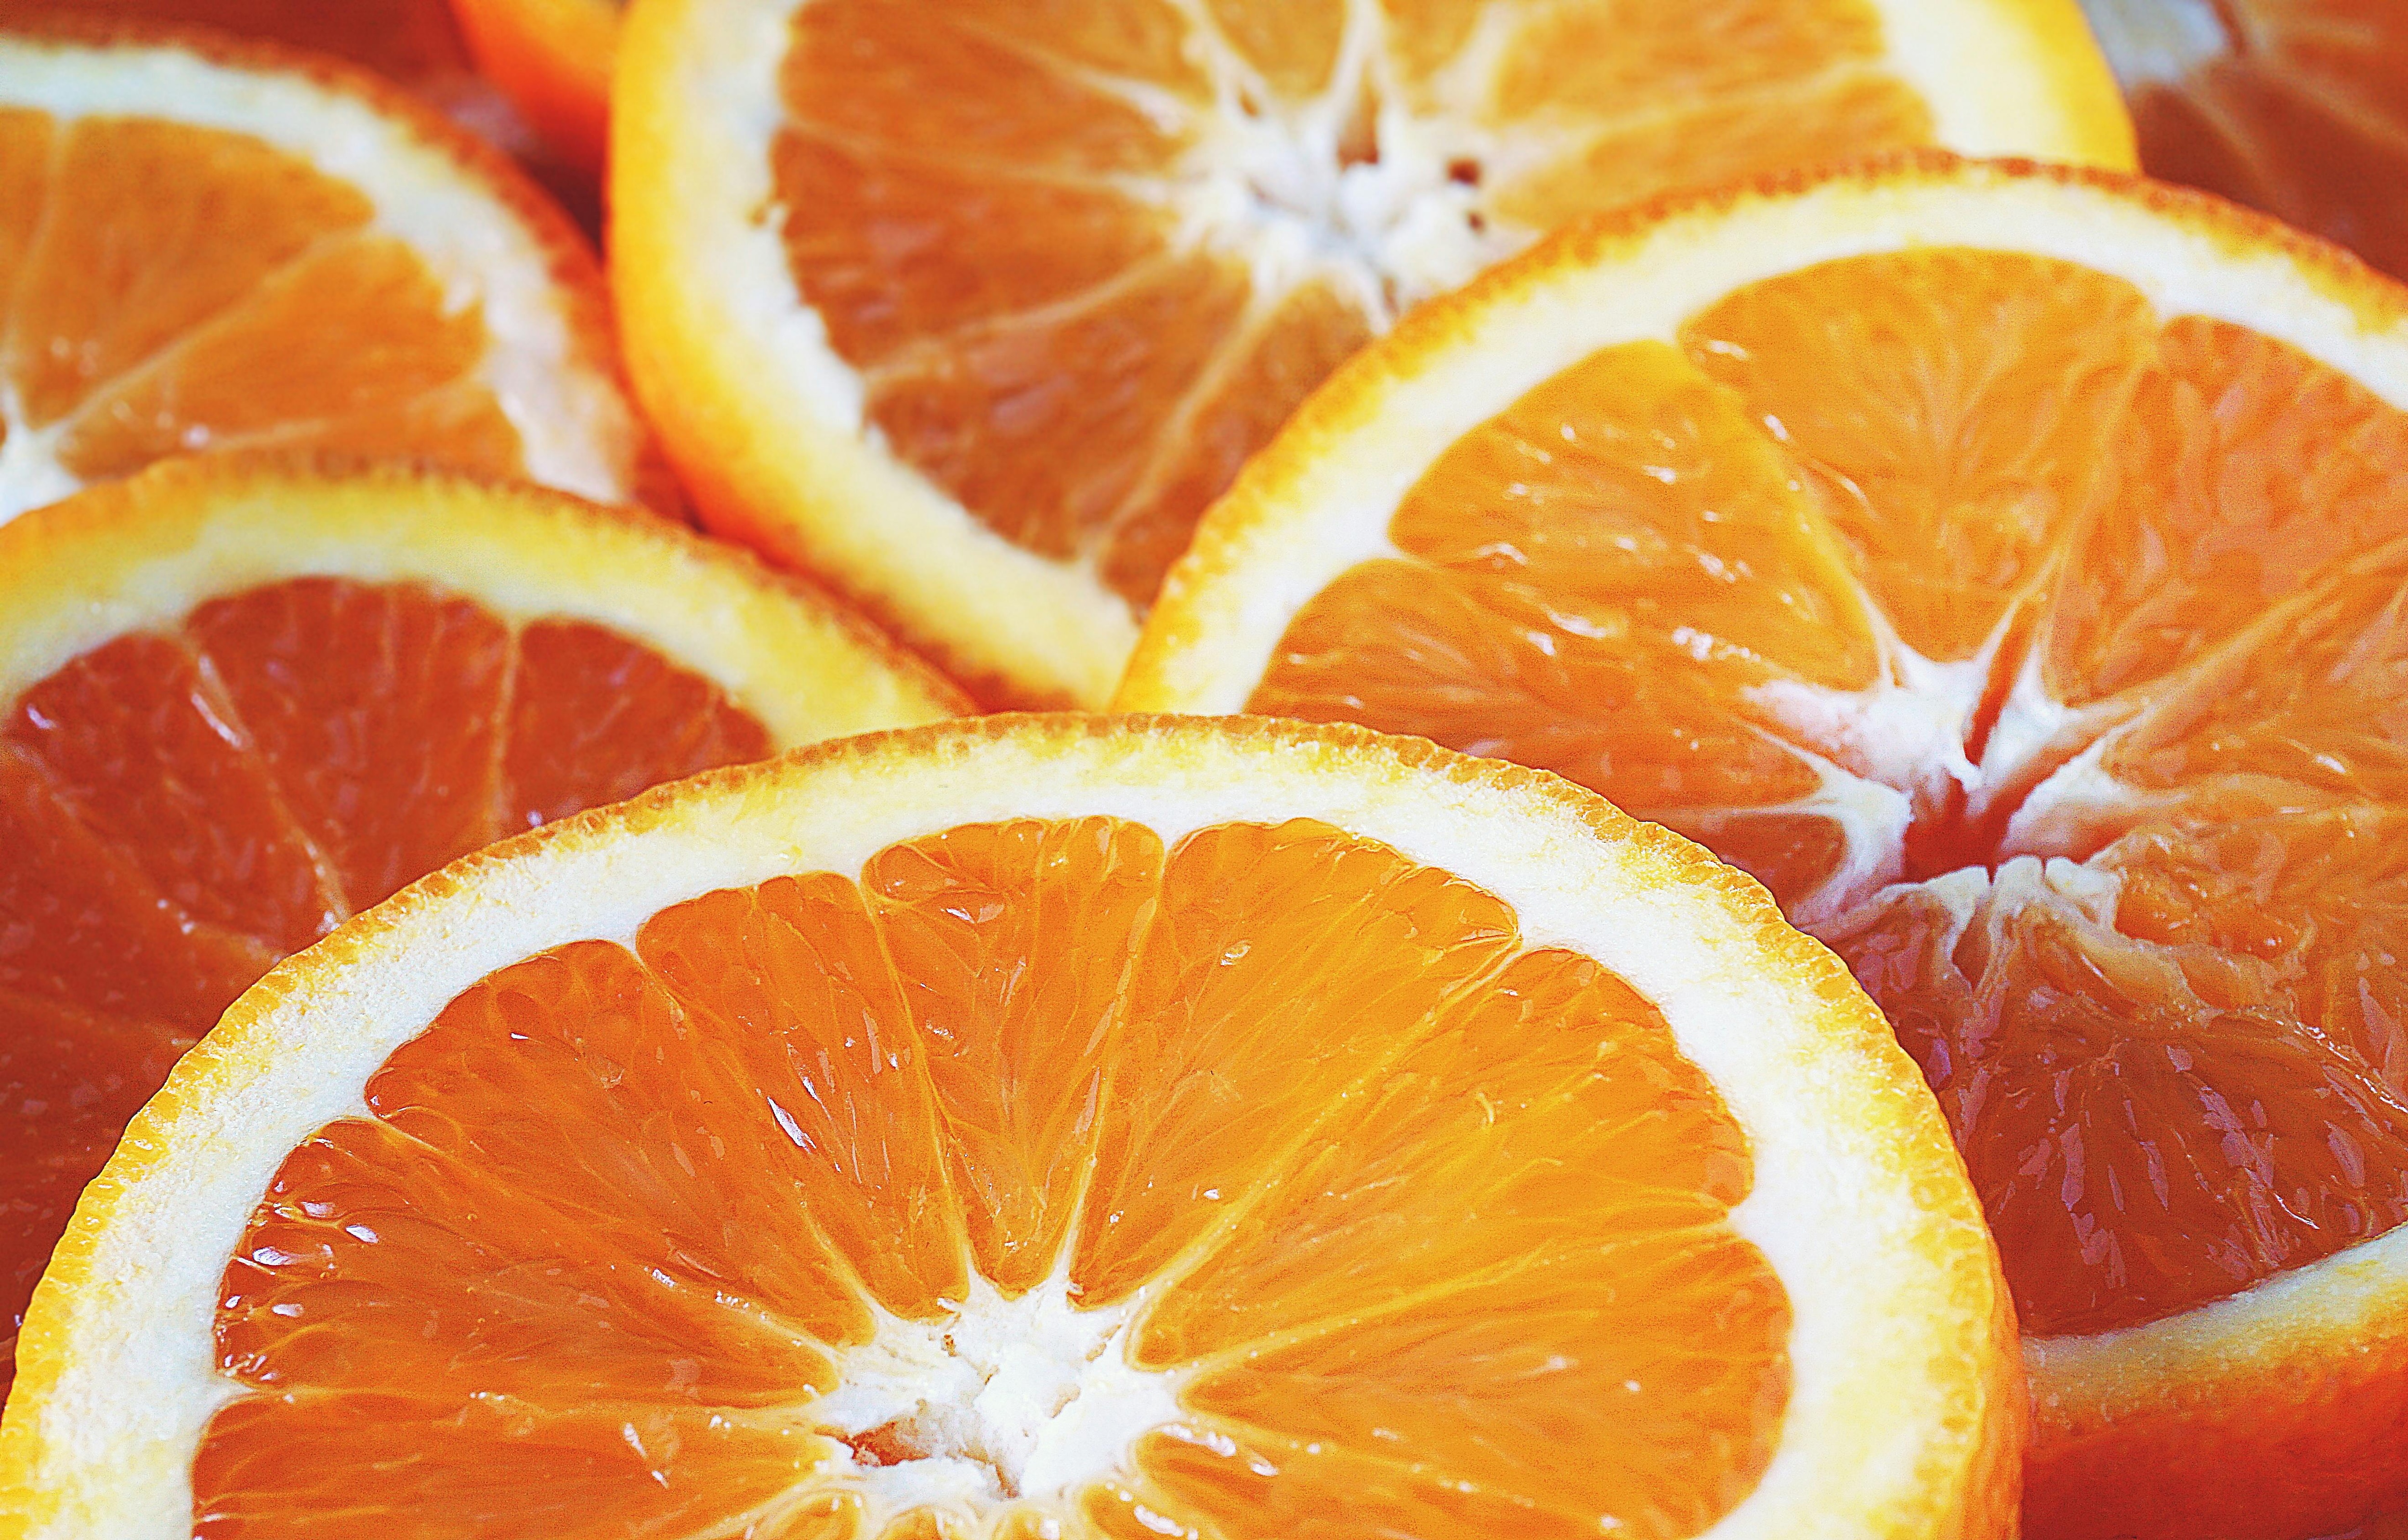 
		Estas son las frutas ricas en vitamina C que deberías comer